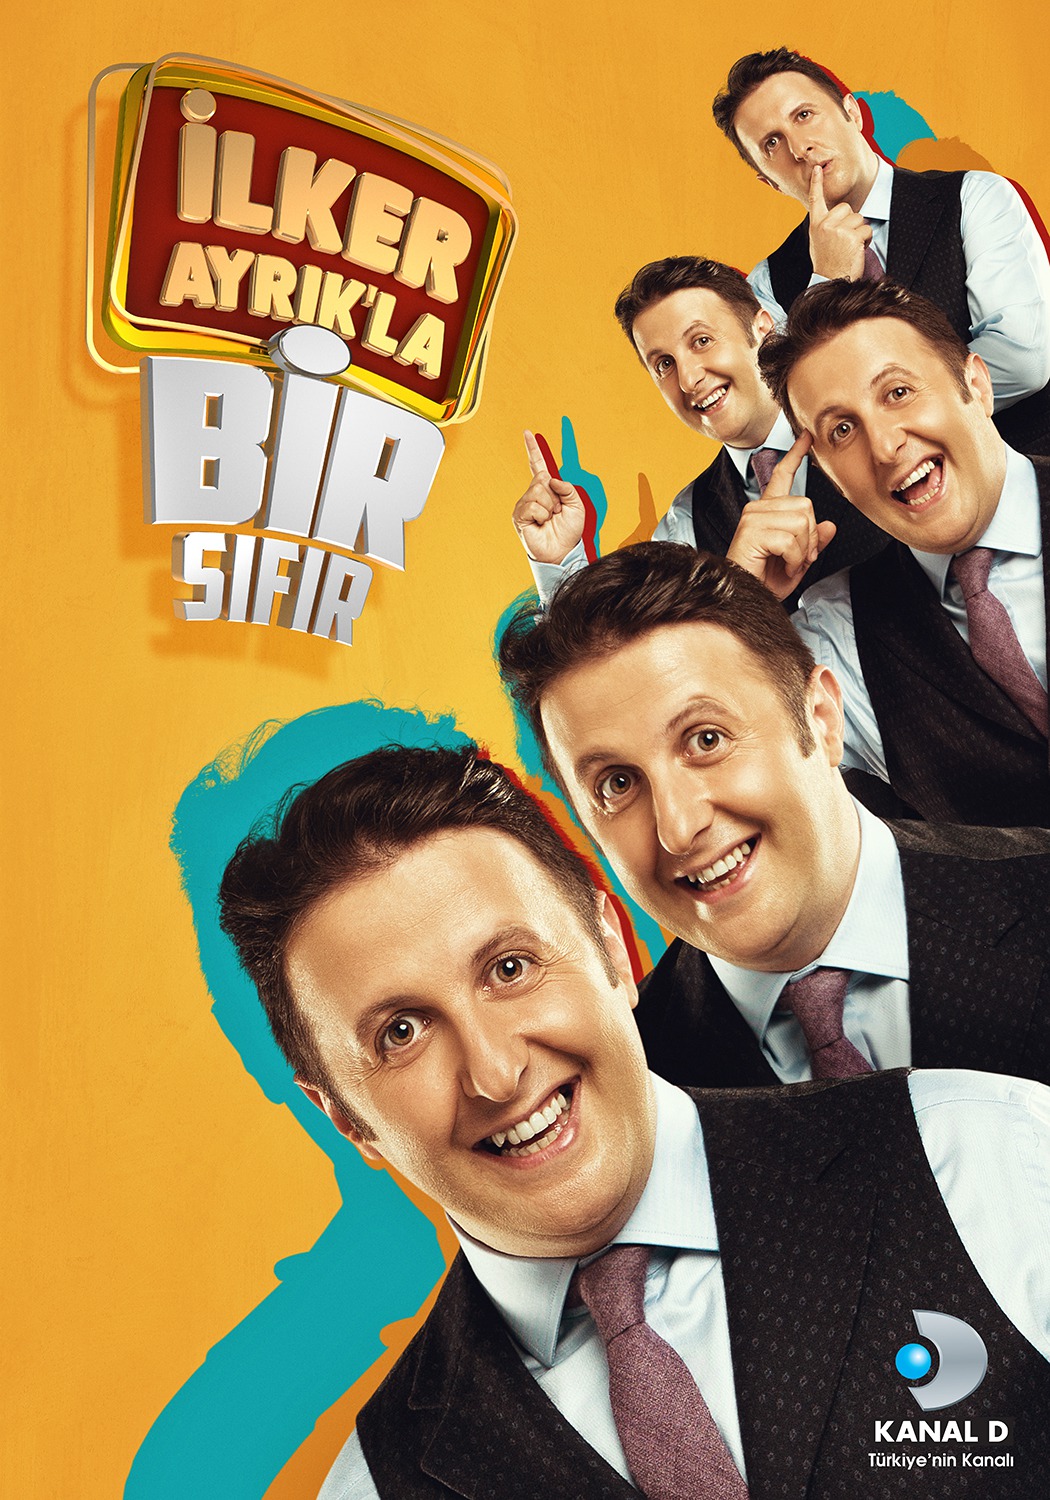 Extra Large TV Poster Image for İlker Ayrık'la Bir Sıfır 